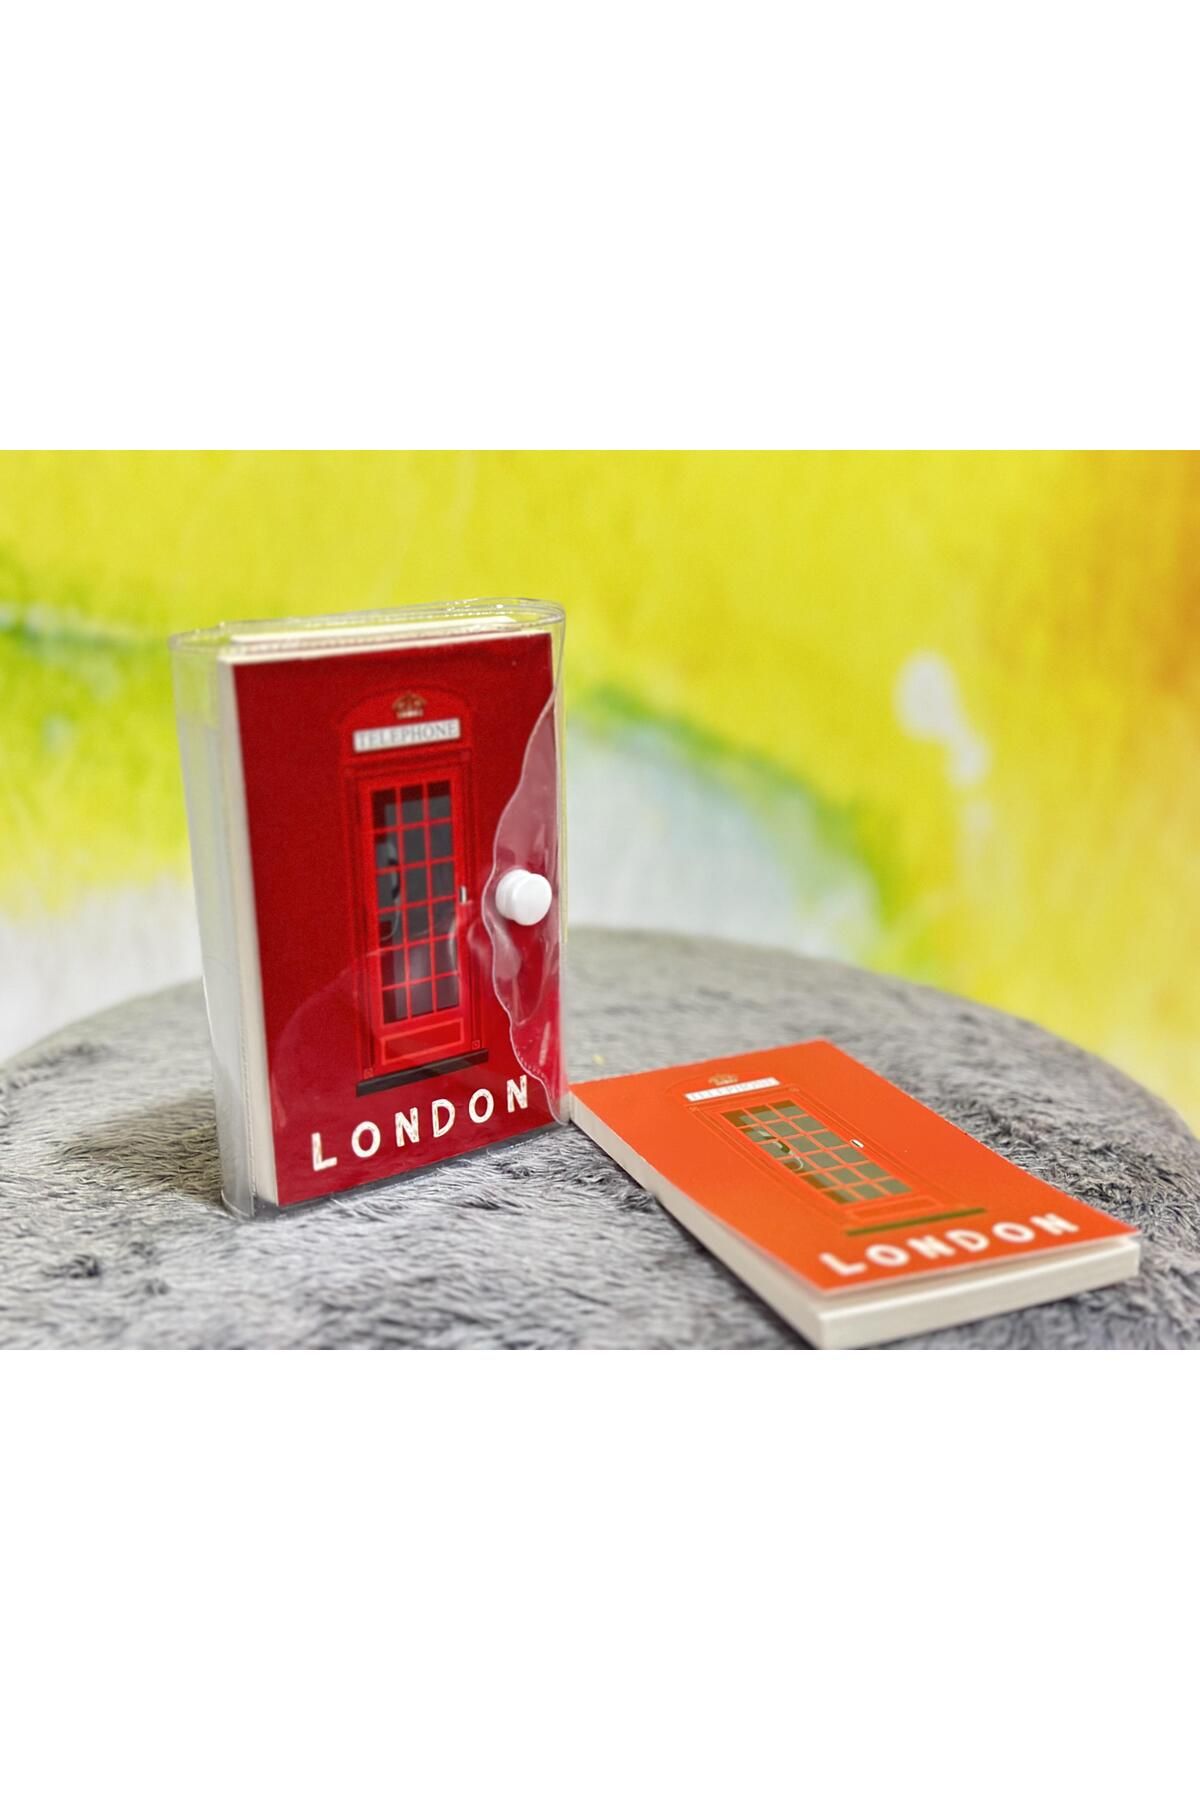 Hayveys Şeffaf Kapaklı London Kırmızı 3'Lü Mini Boy Çizgili Not Defteri Çanta İçi Defter